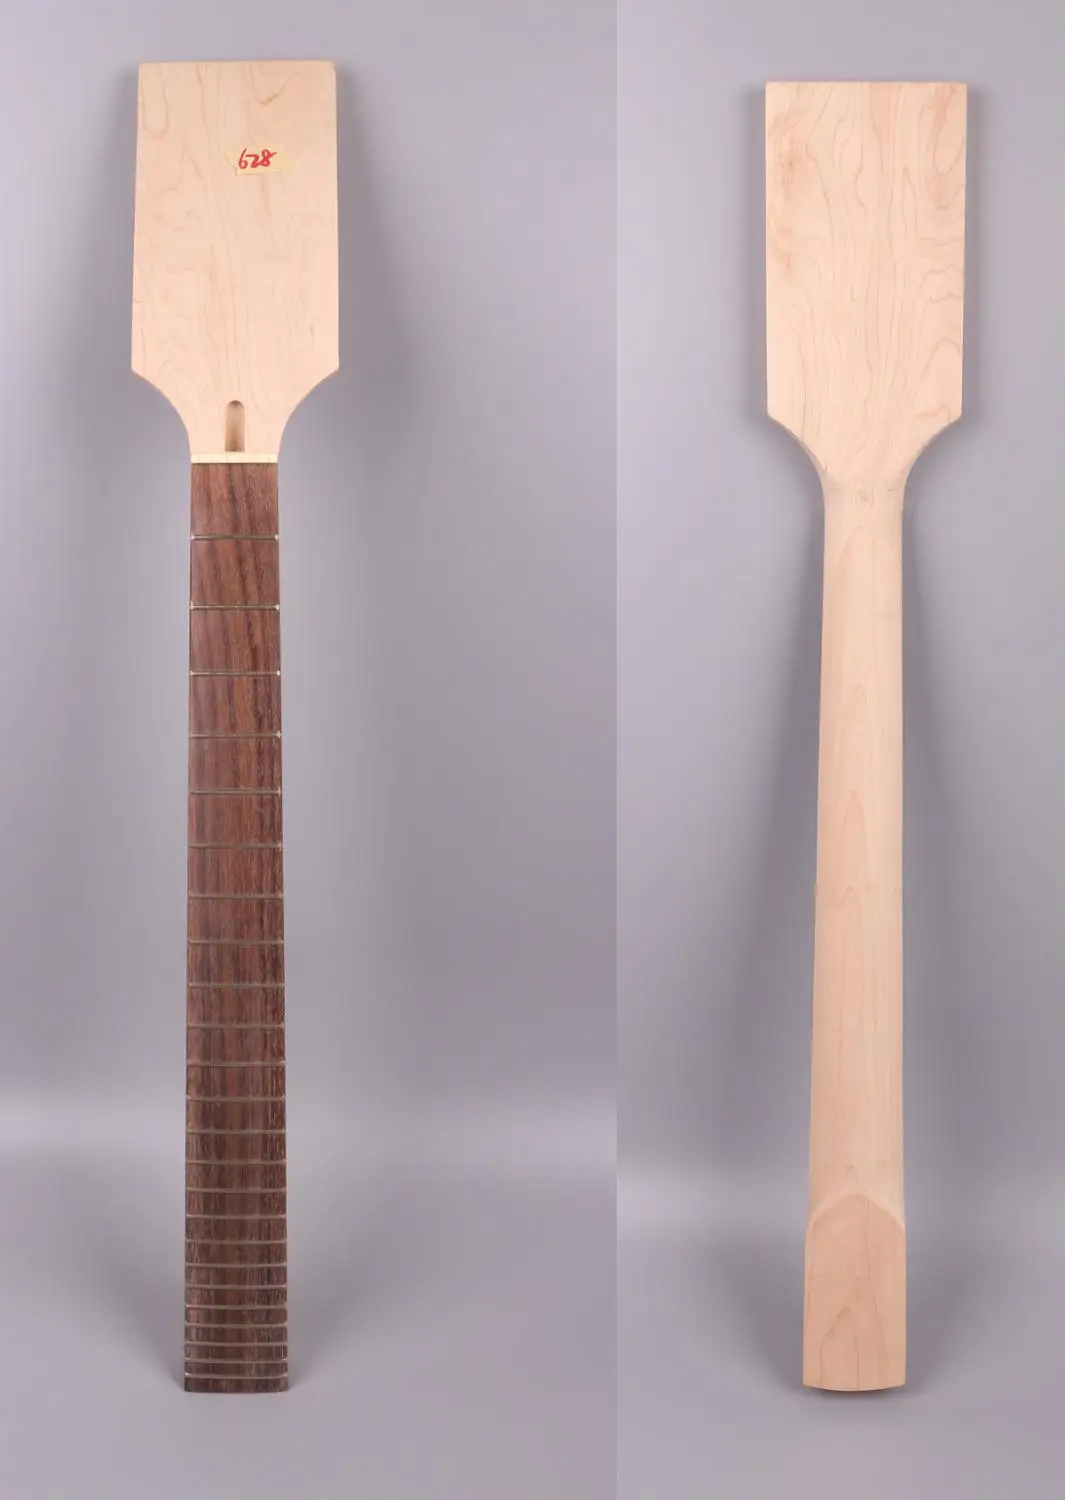 mogno-guitarra-eletrica-pescoco-24fret-24-75-polegadas-628-rosewood-fretboard-inacabado